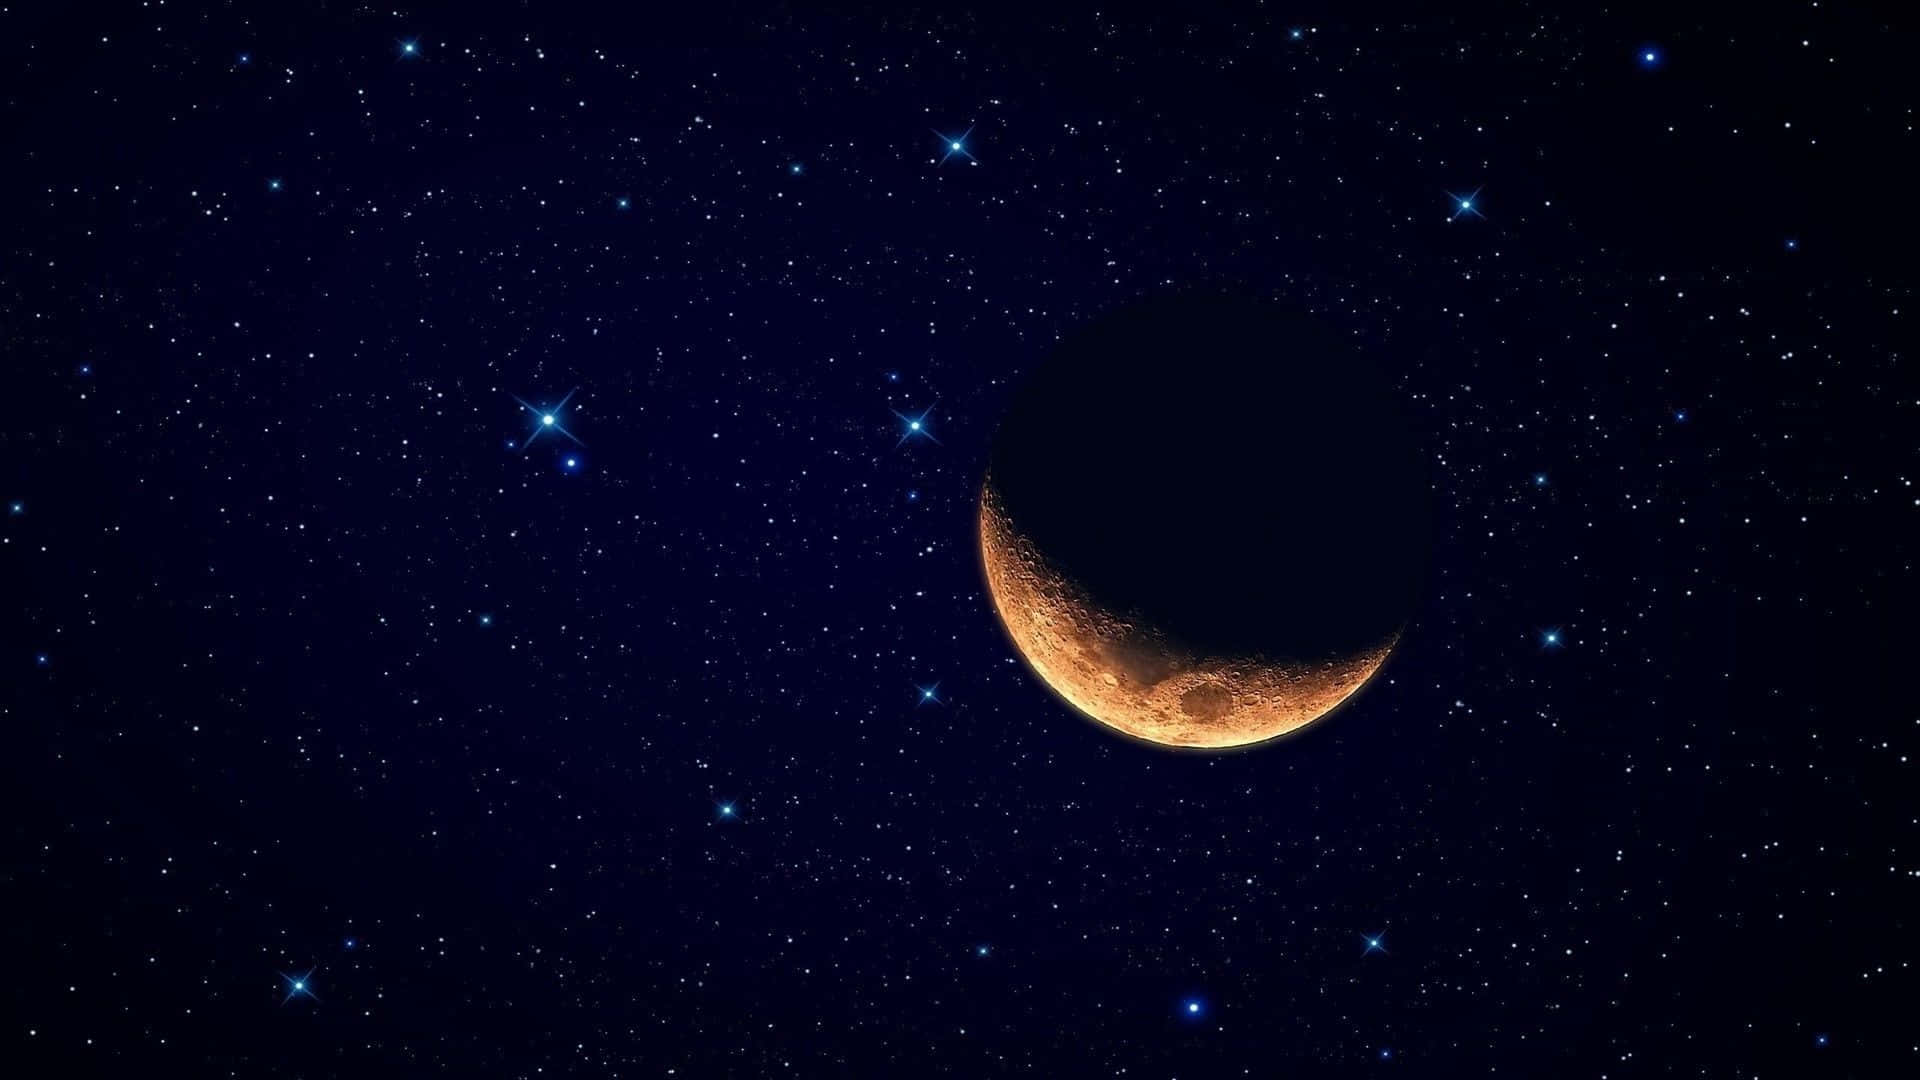 Cielonocturno Con Una Luna Y Estrellas Cautivadoras